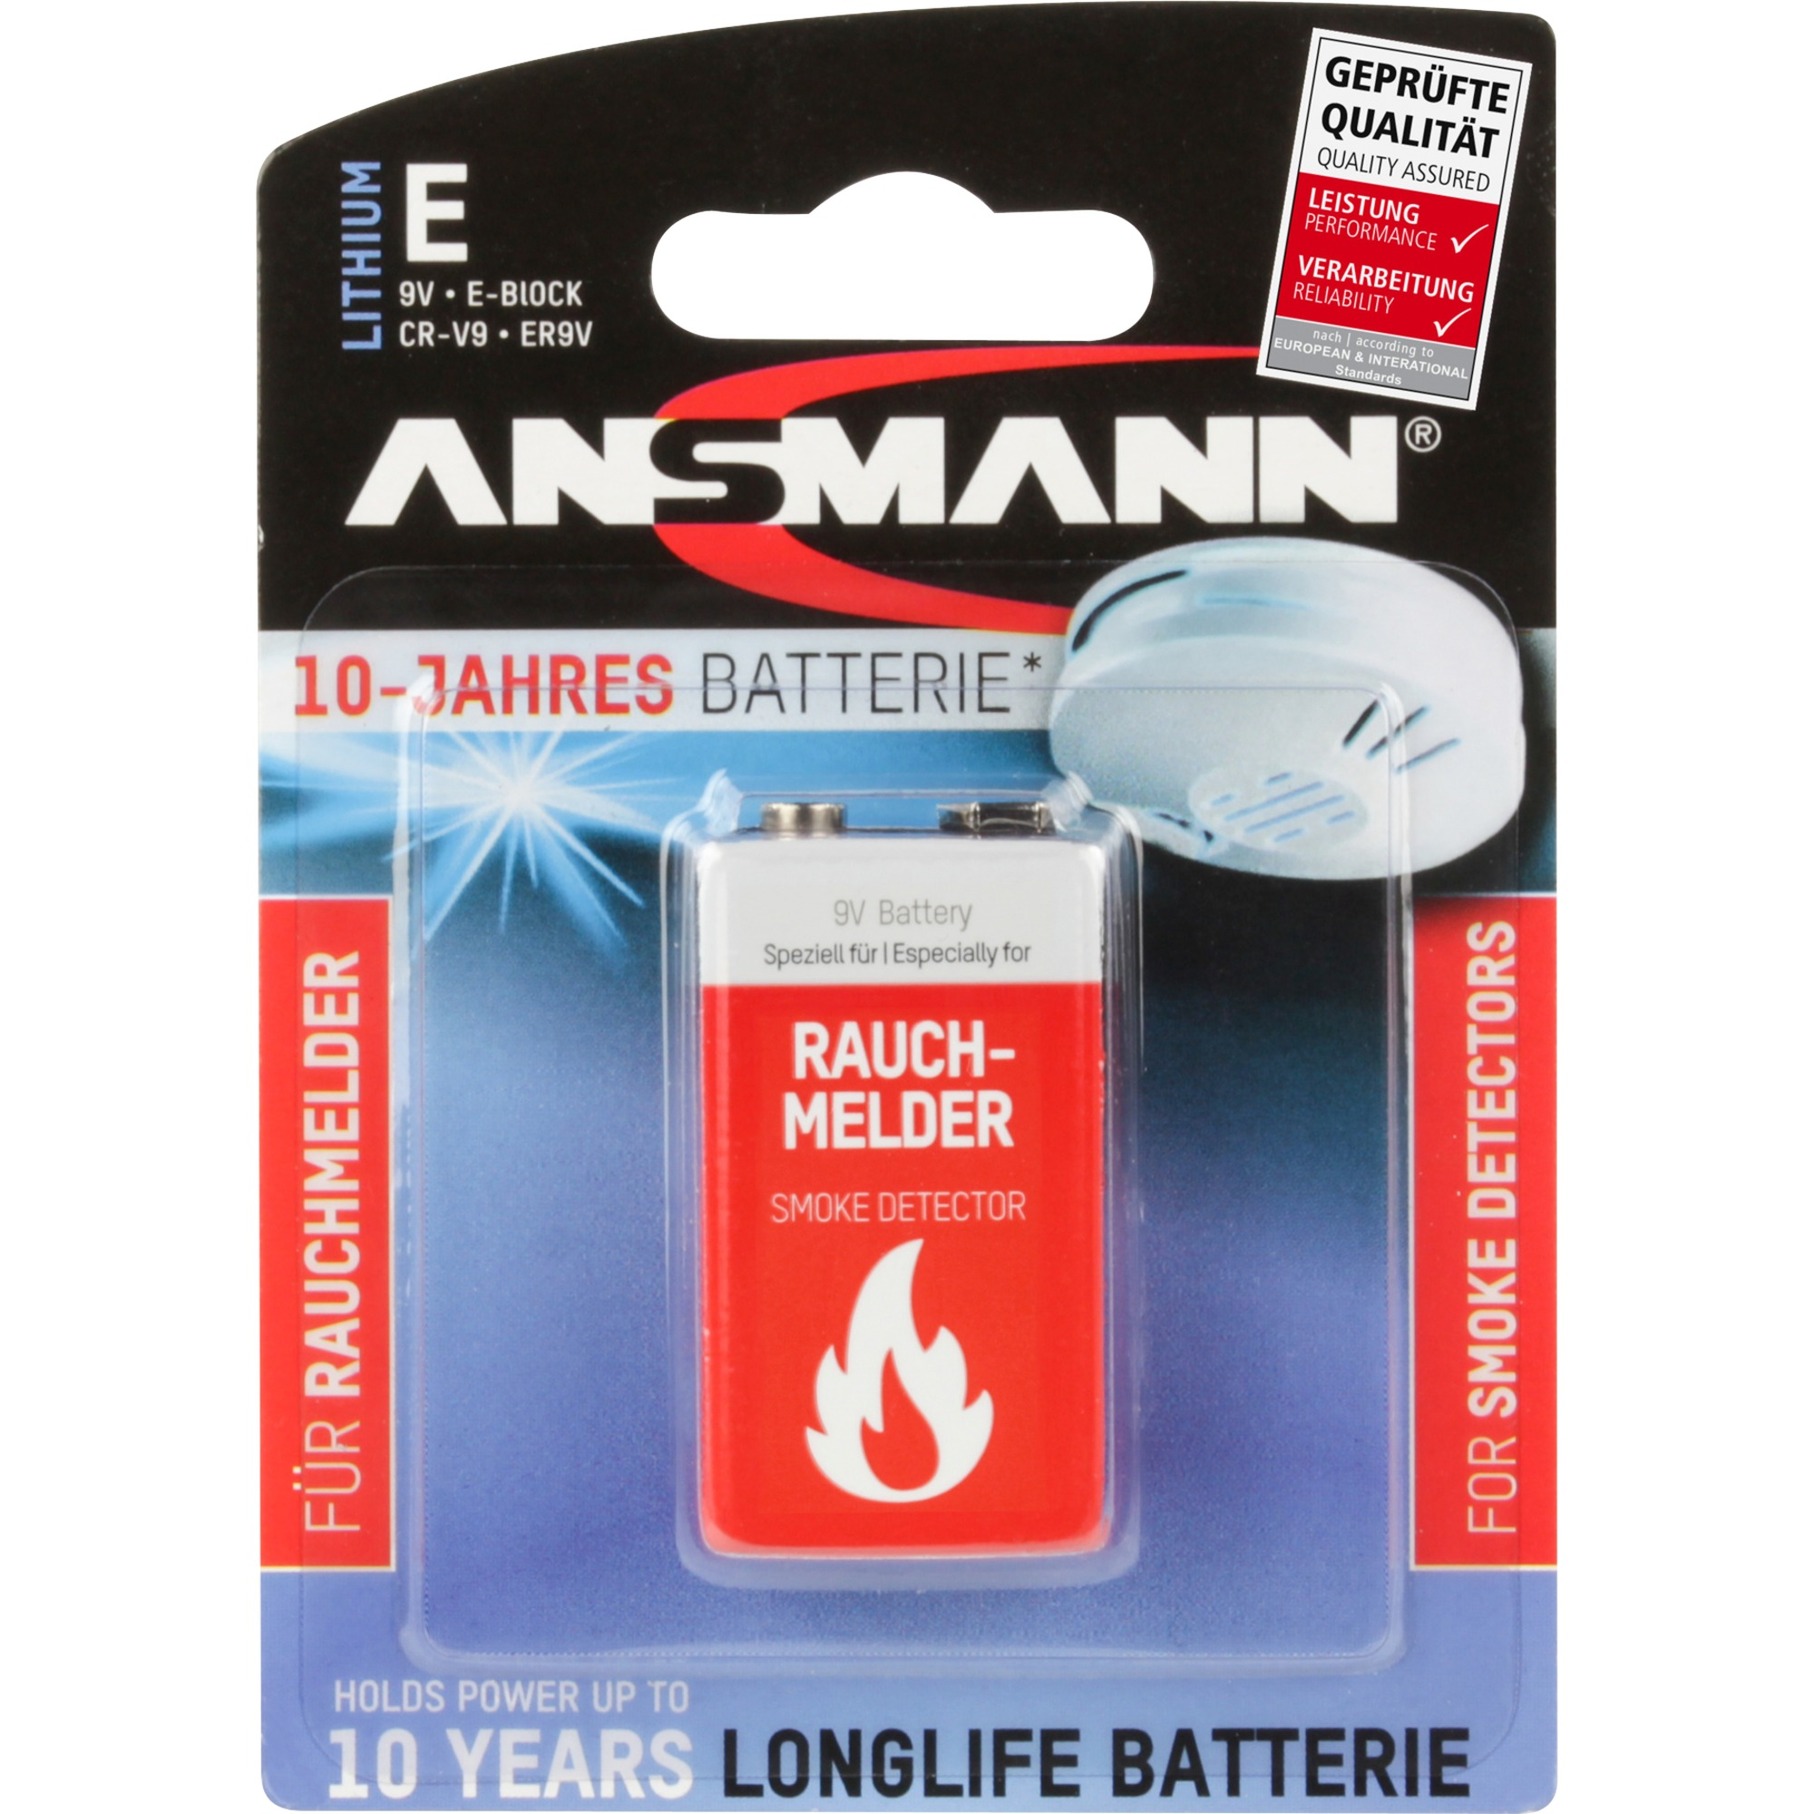 Image of Alternate - Lithium Batterie für Rauchmelder online einkaufen bei Alternate